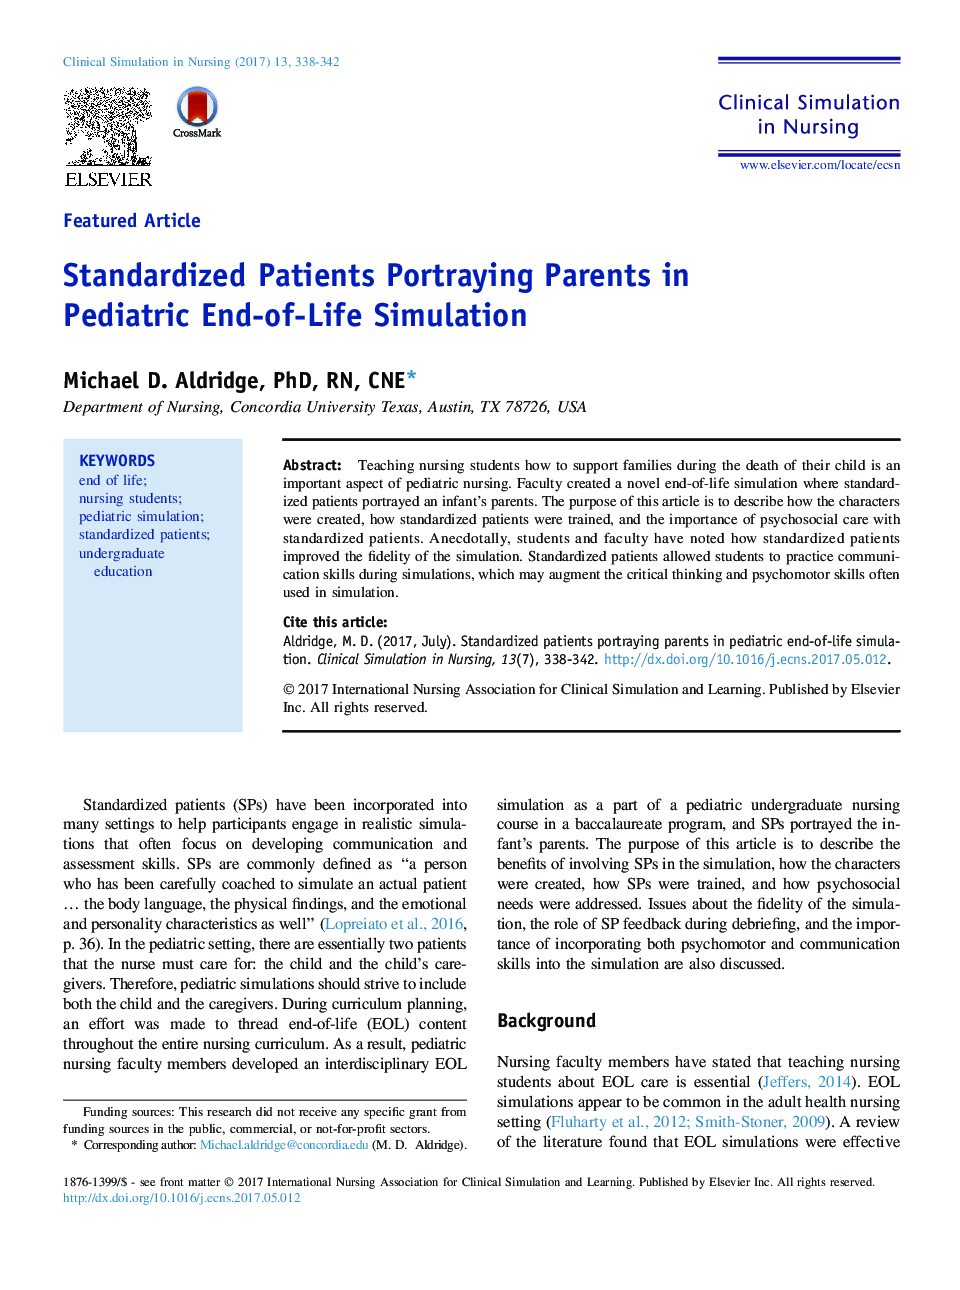 بیماران استاندارد شده نشان دهنده پدر و مادر در شبیه سازی از پایان زندگی کودکان است 